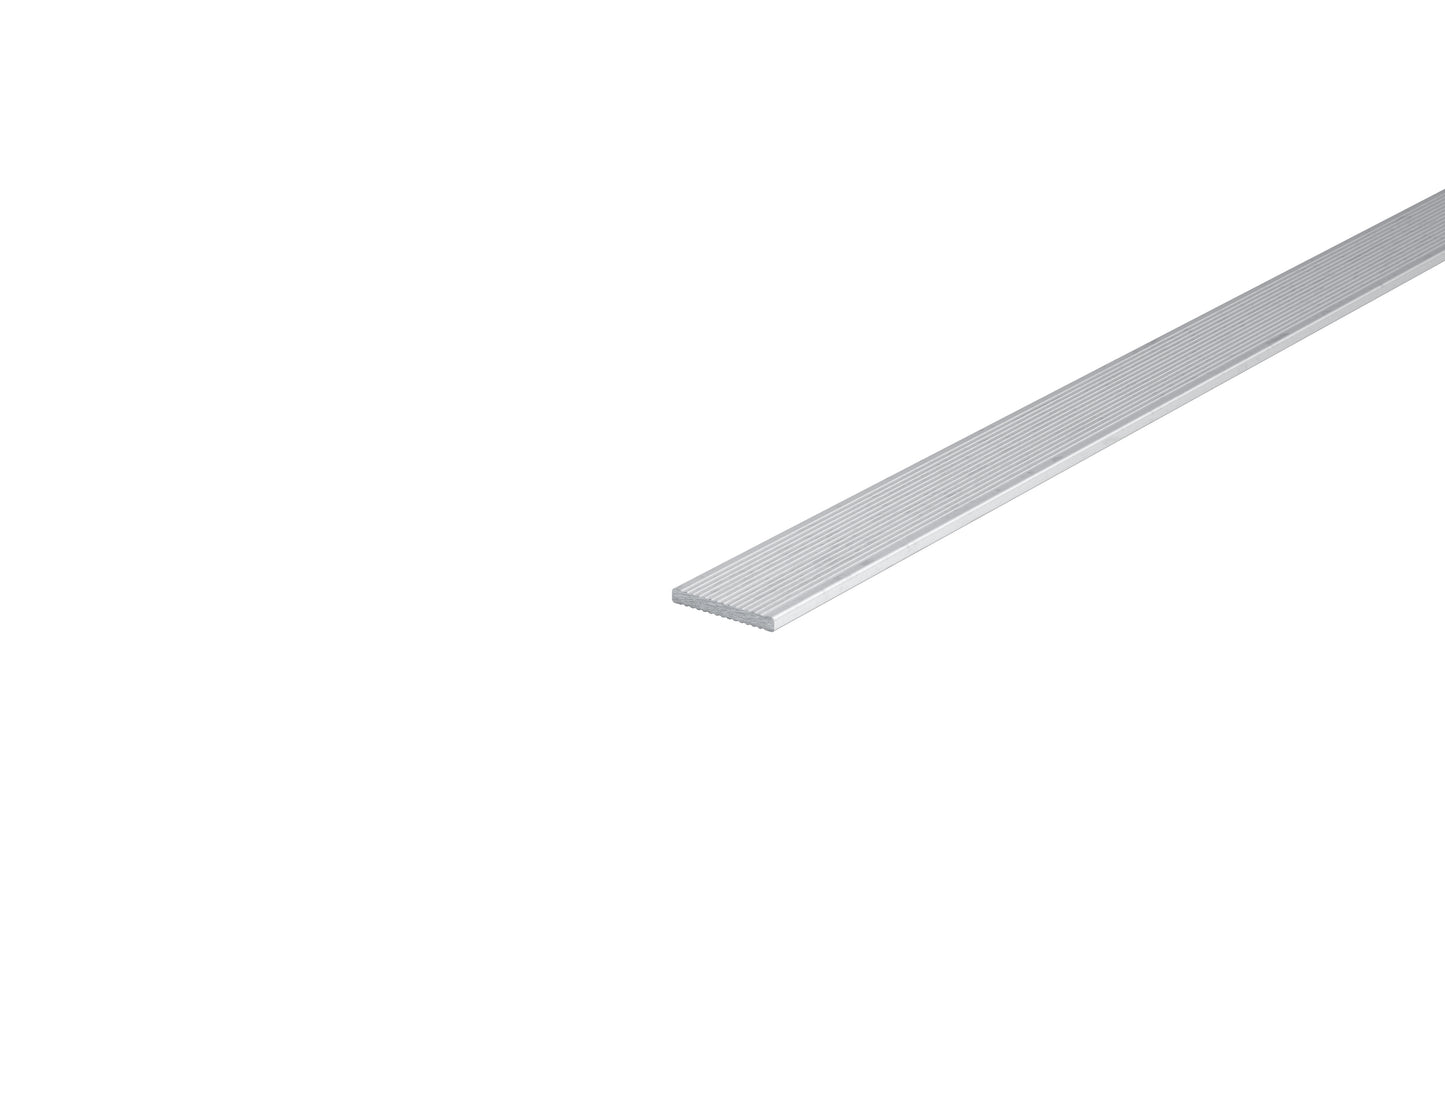 1" x 1/8" Aluminum Bar Solid Fluted 1" x 0.125" Aluminum Rectangle Solid